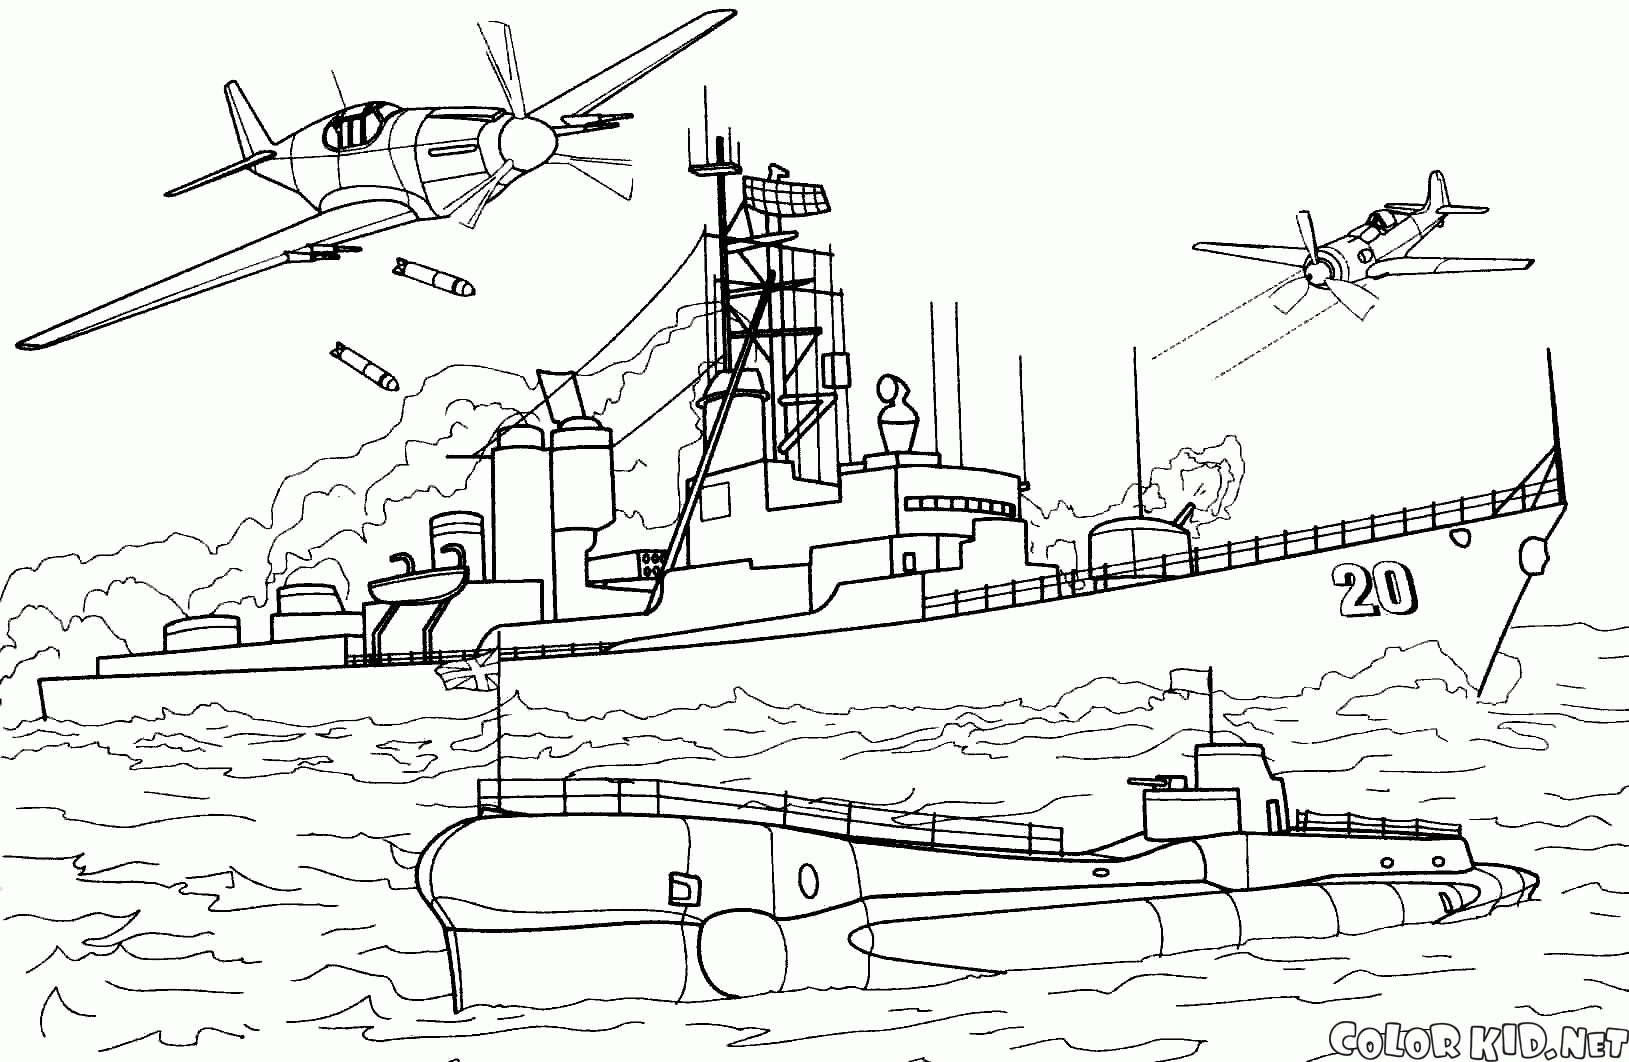 US destroyer